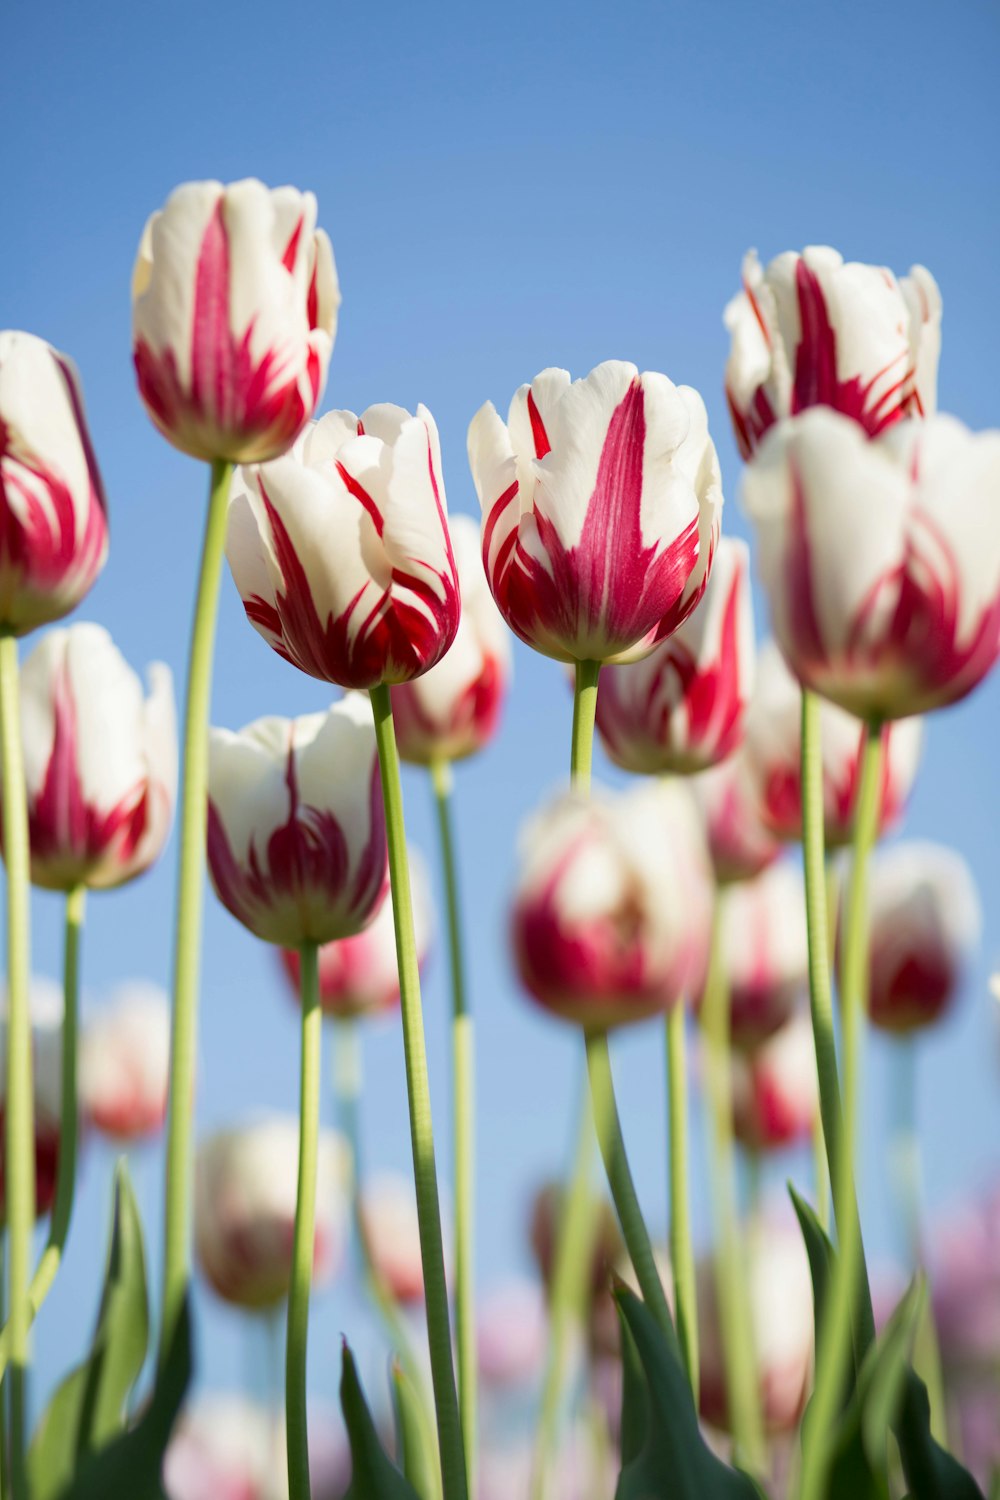 Flachfokusfotografie von weiß-rosafarbenen Blütenblättern